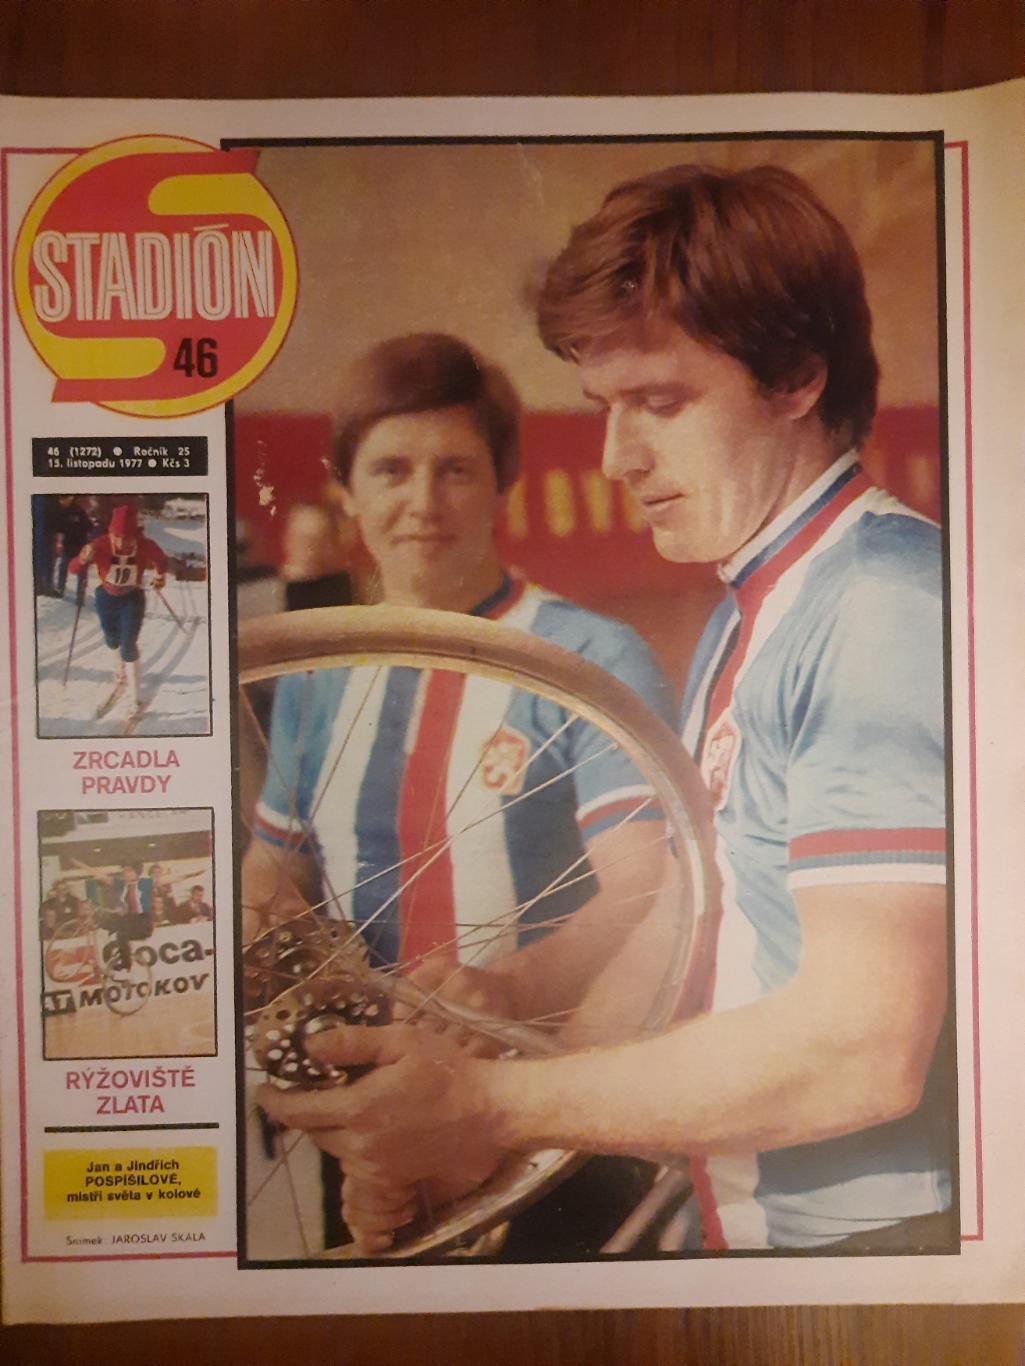 Стадион,Чехословакия #46(1272) 1977